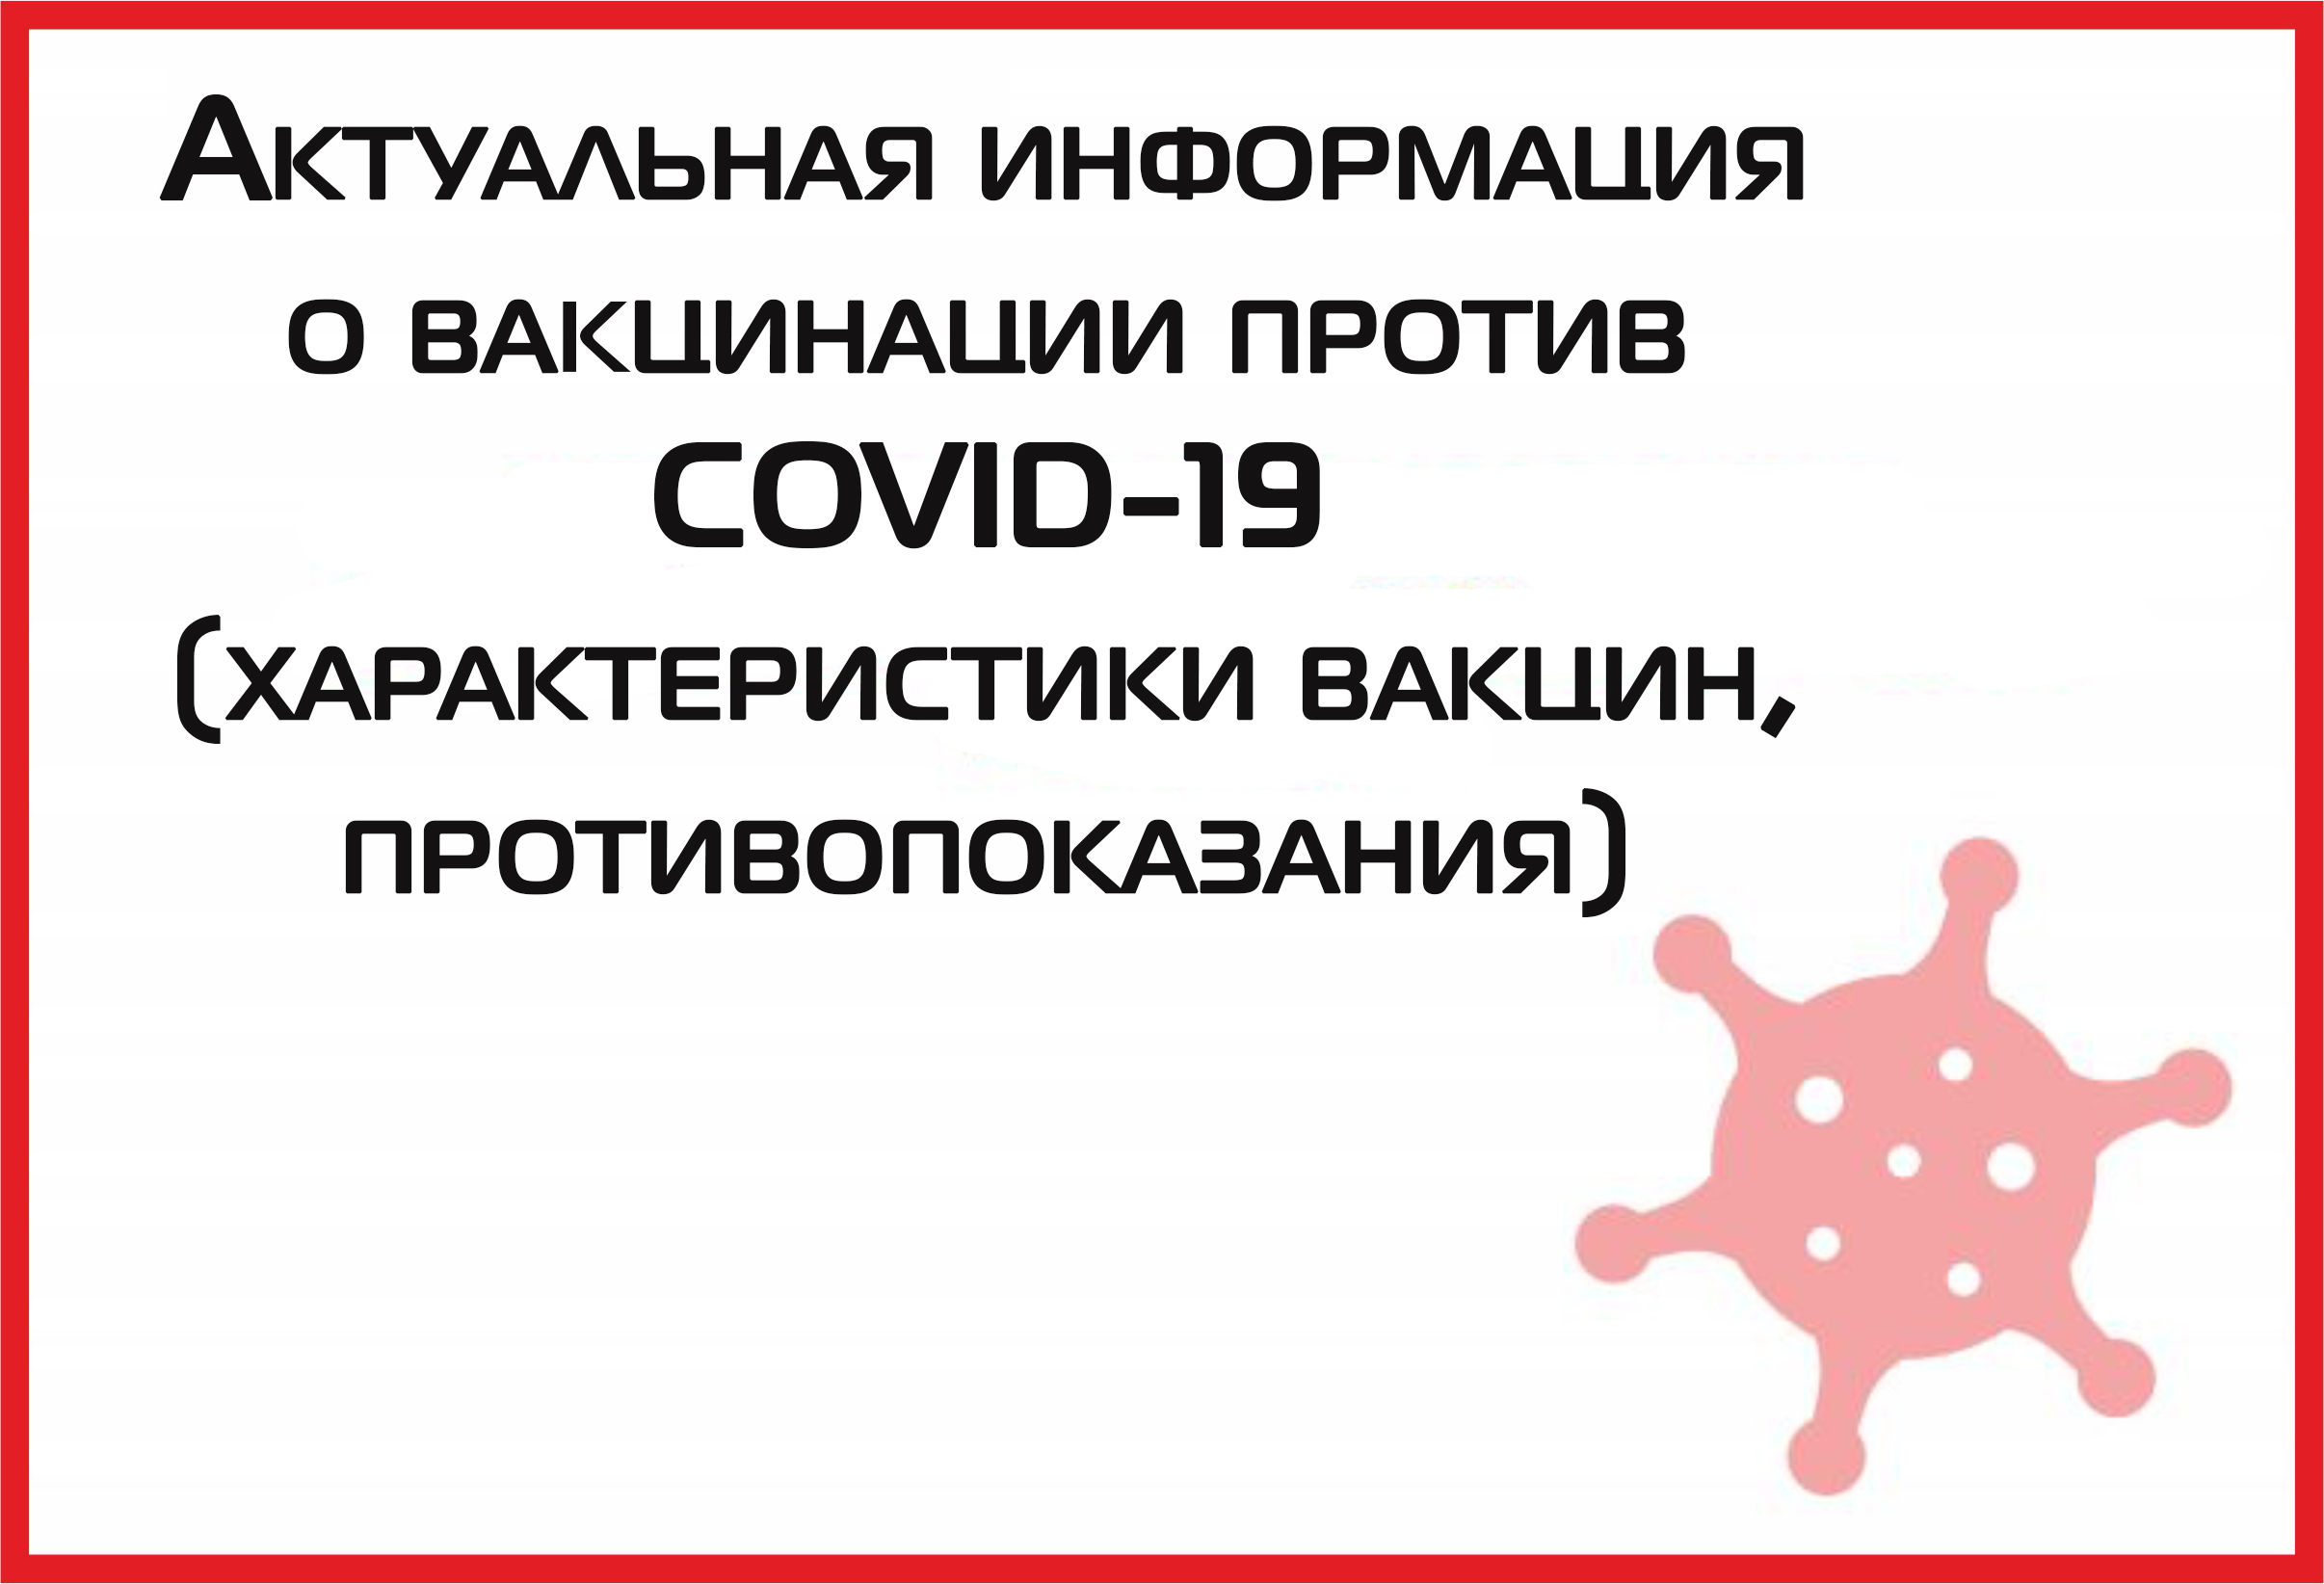 Прокуратура Санкт-Петербурга проводит проверку в отношении медицинского персонала, заразившегося COVID-19